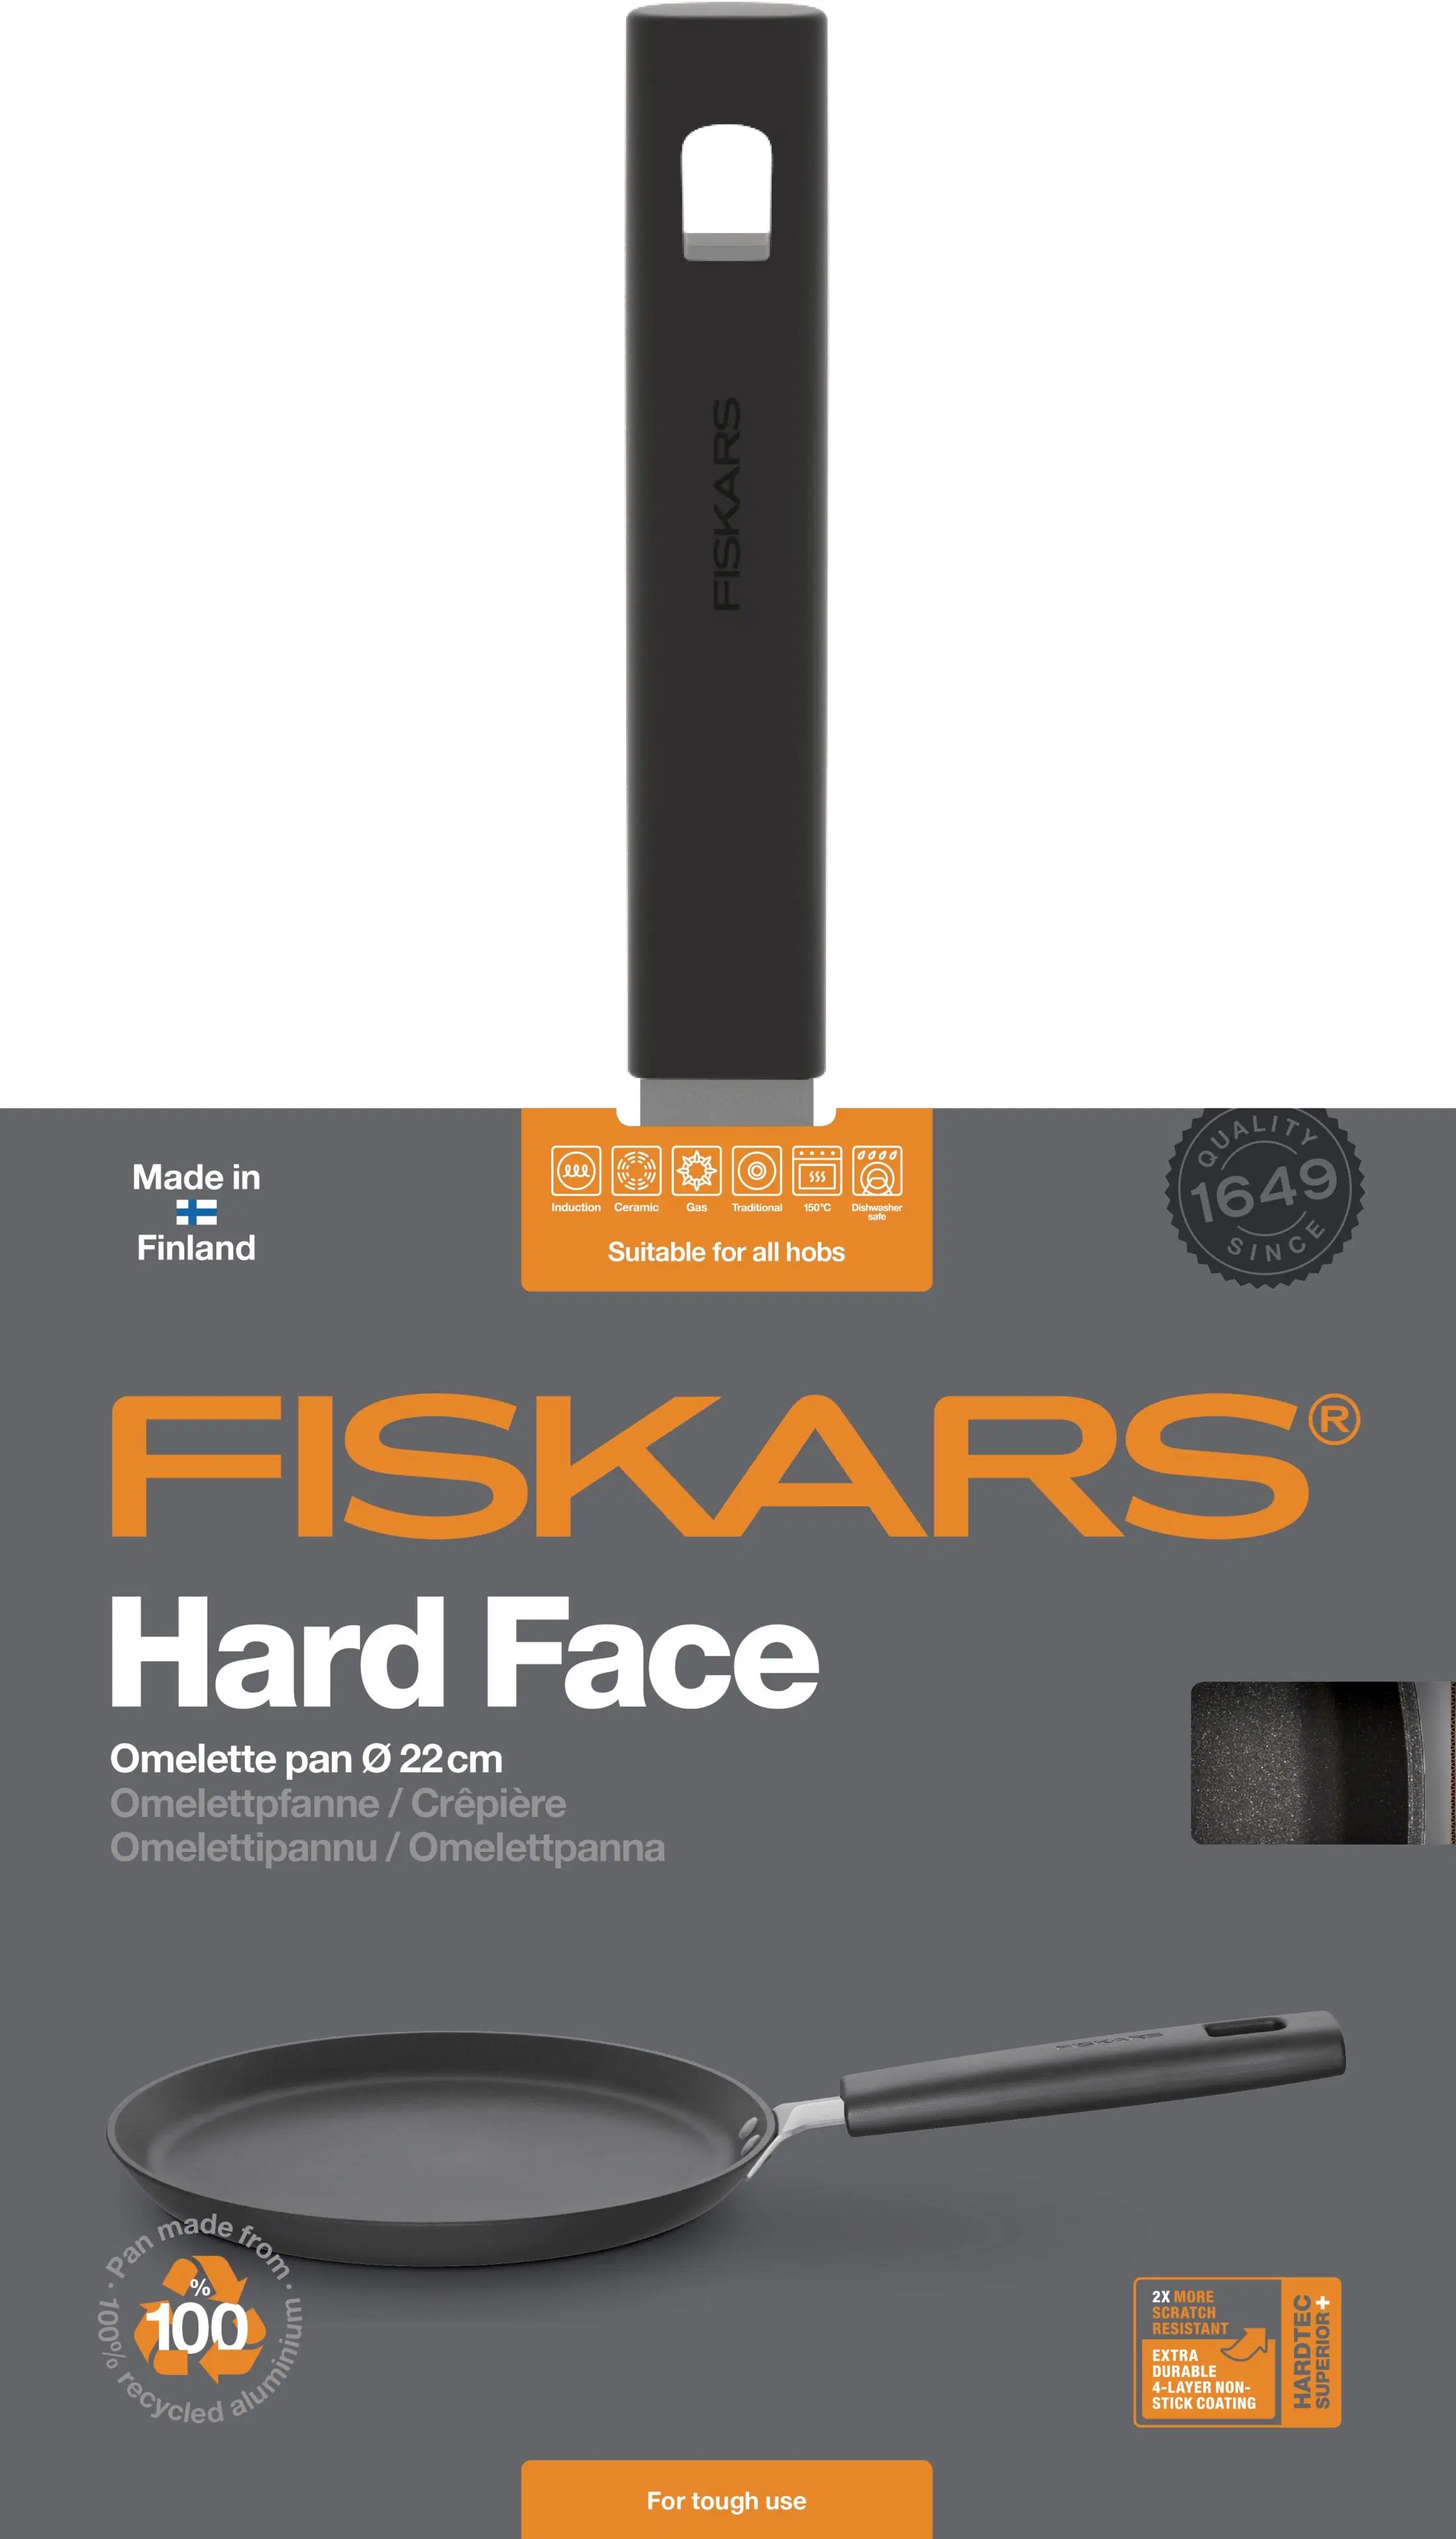 Fiskars Hard Face 22 cm ohukais- /omelettipannu